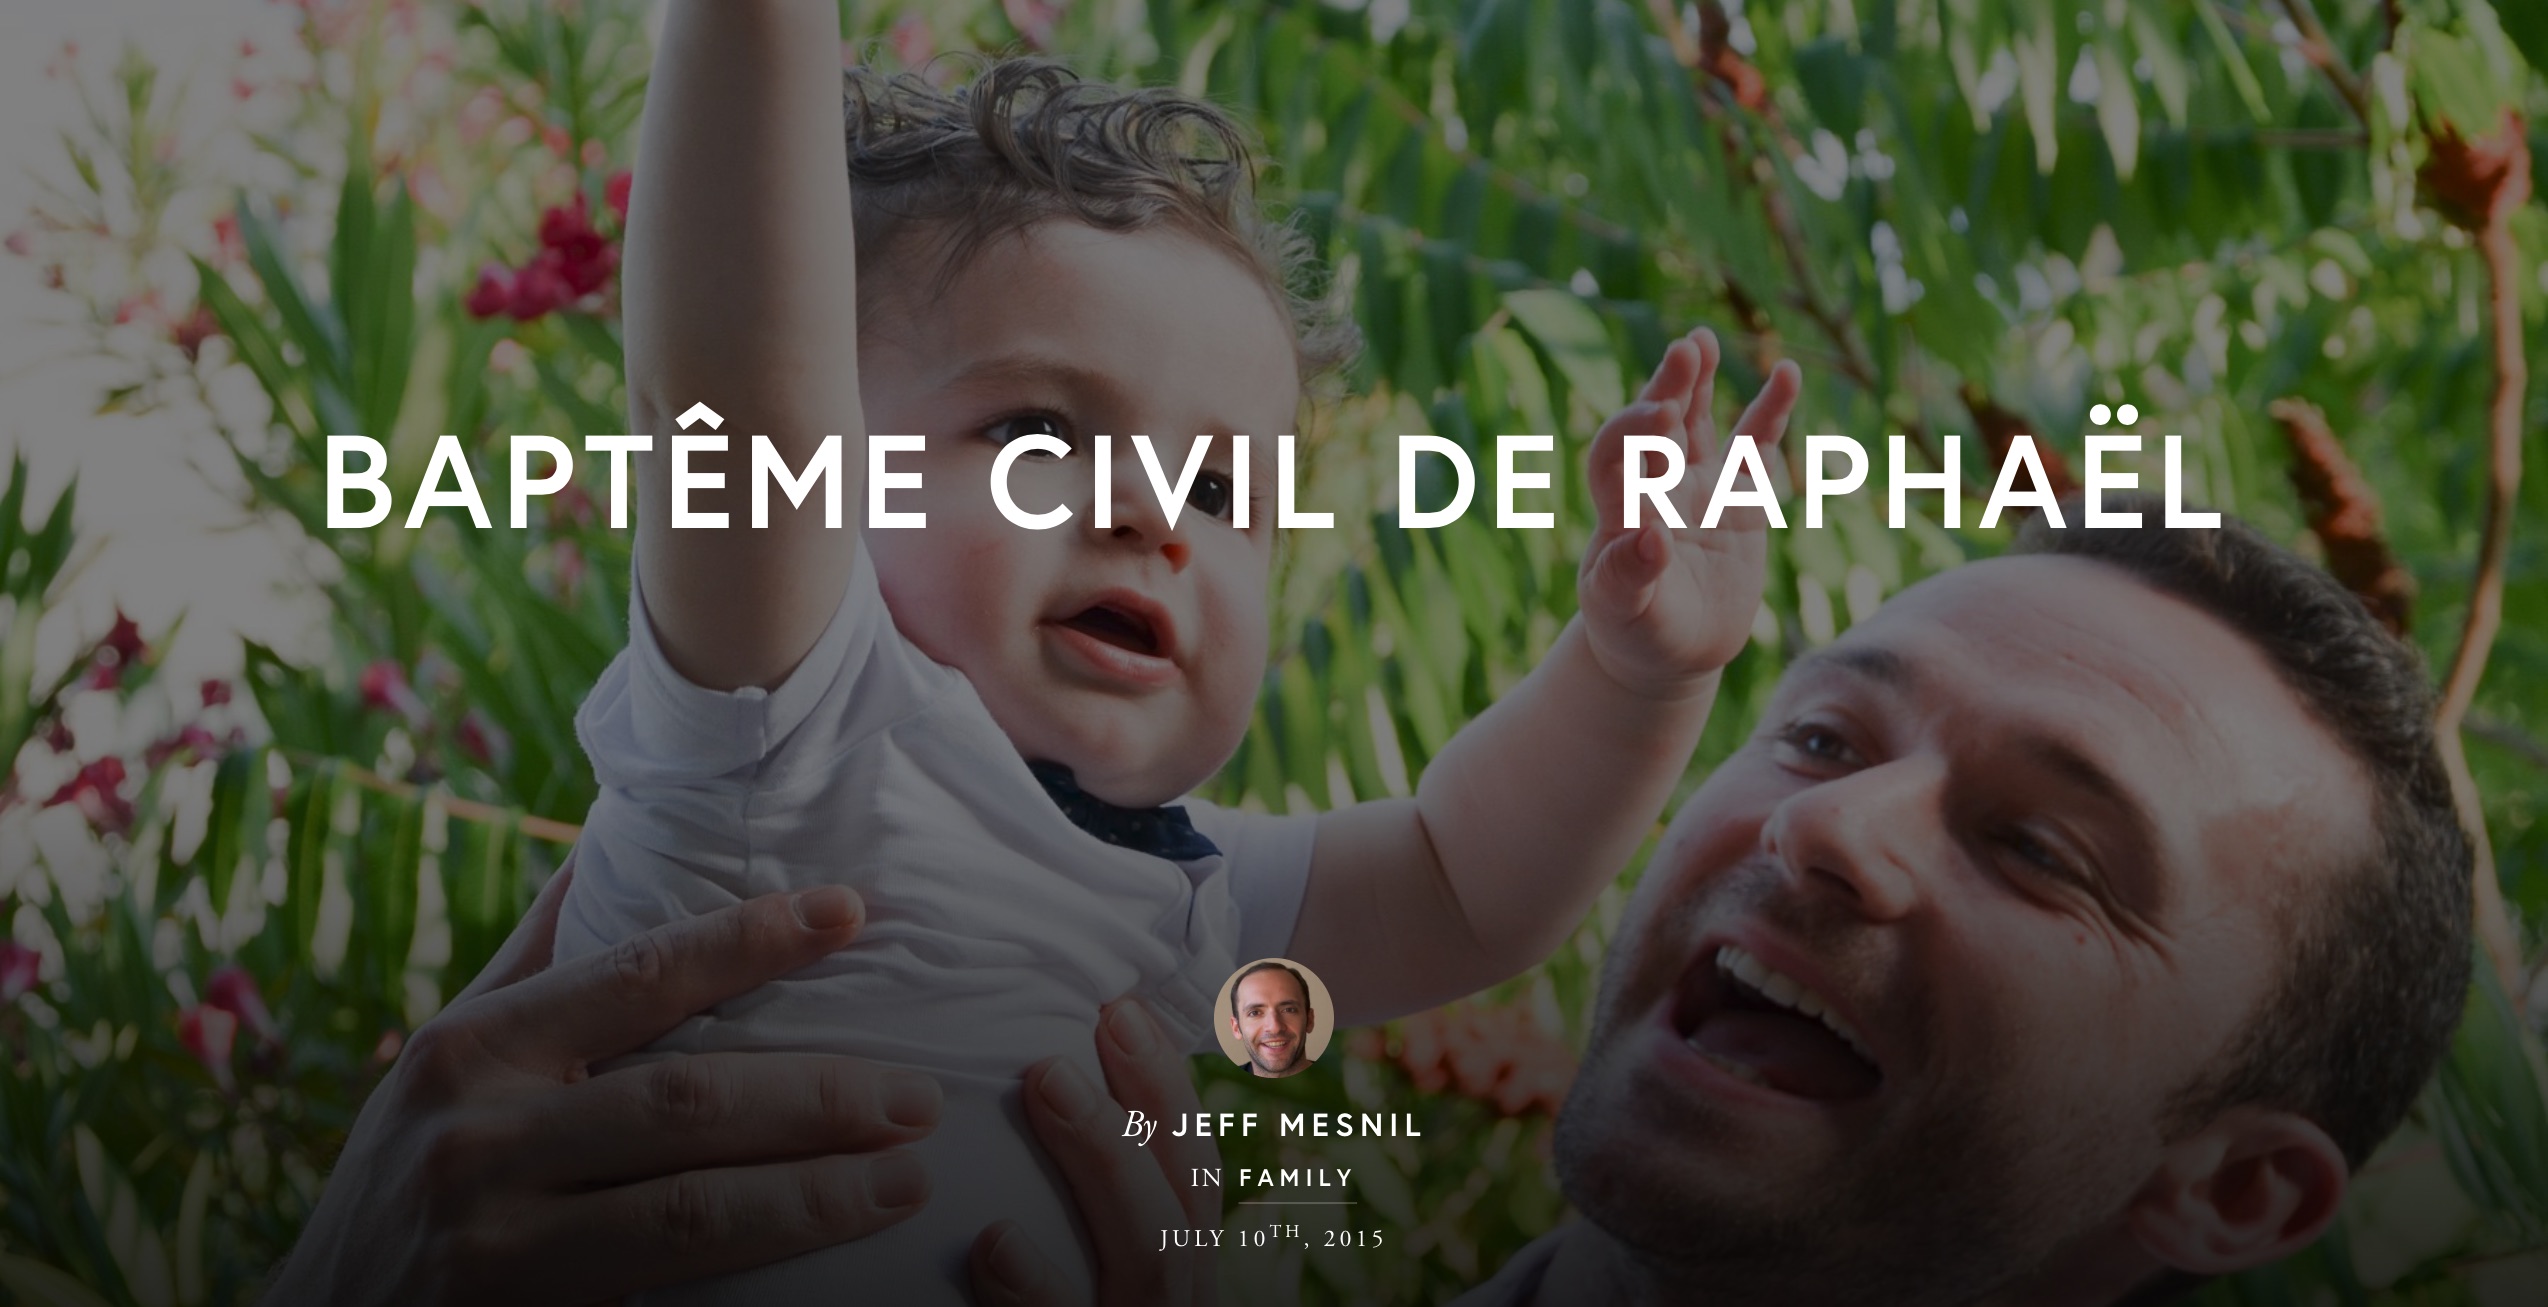 Bapt&ecirc;me Civil de Rapha&euml;l on Exposure